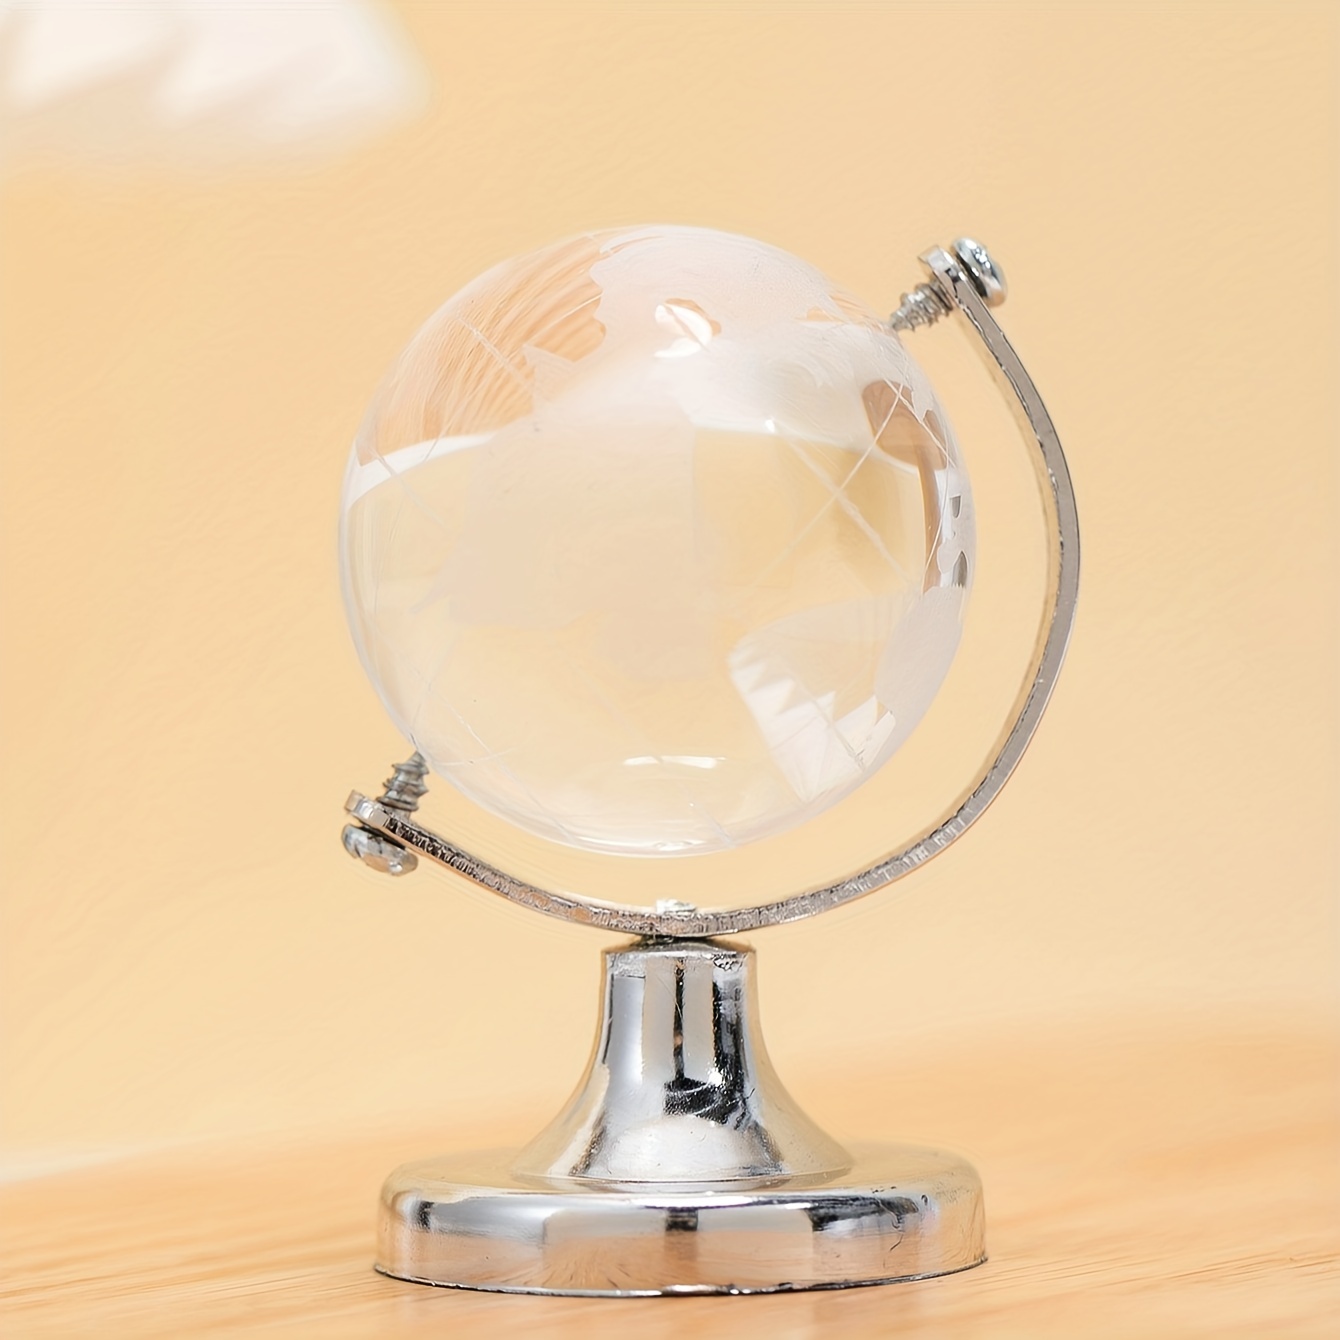 1 Pièce Décoration De Globe Terrestre En Cristal Avec Base